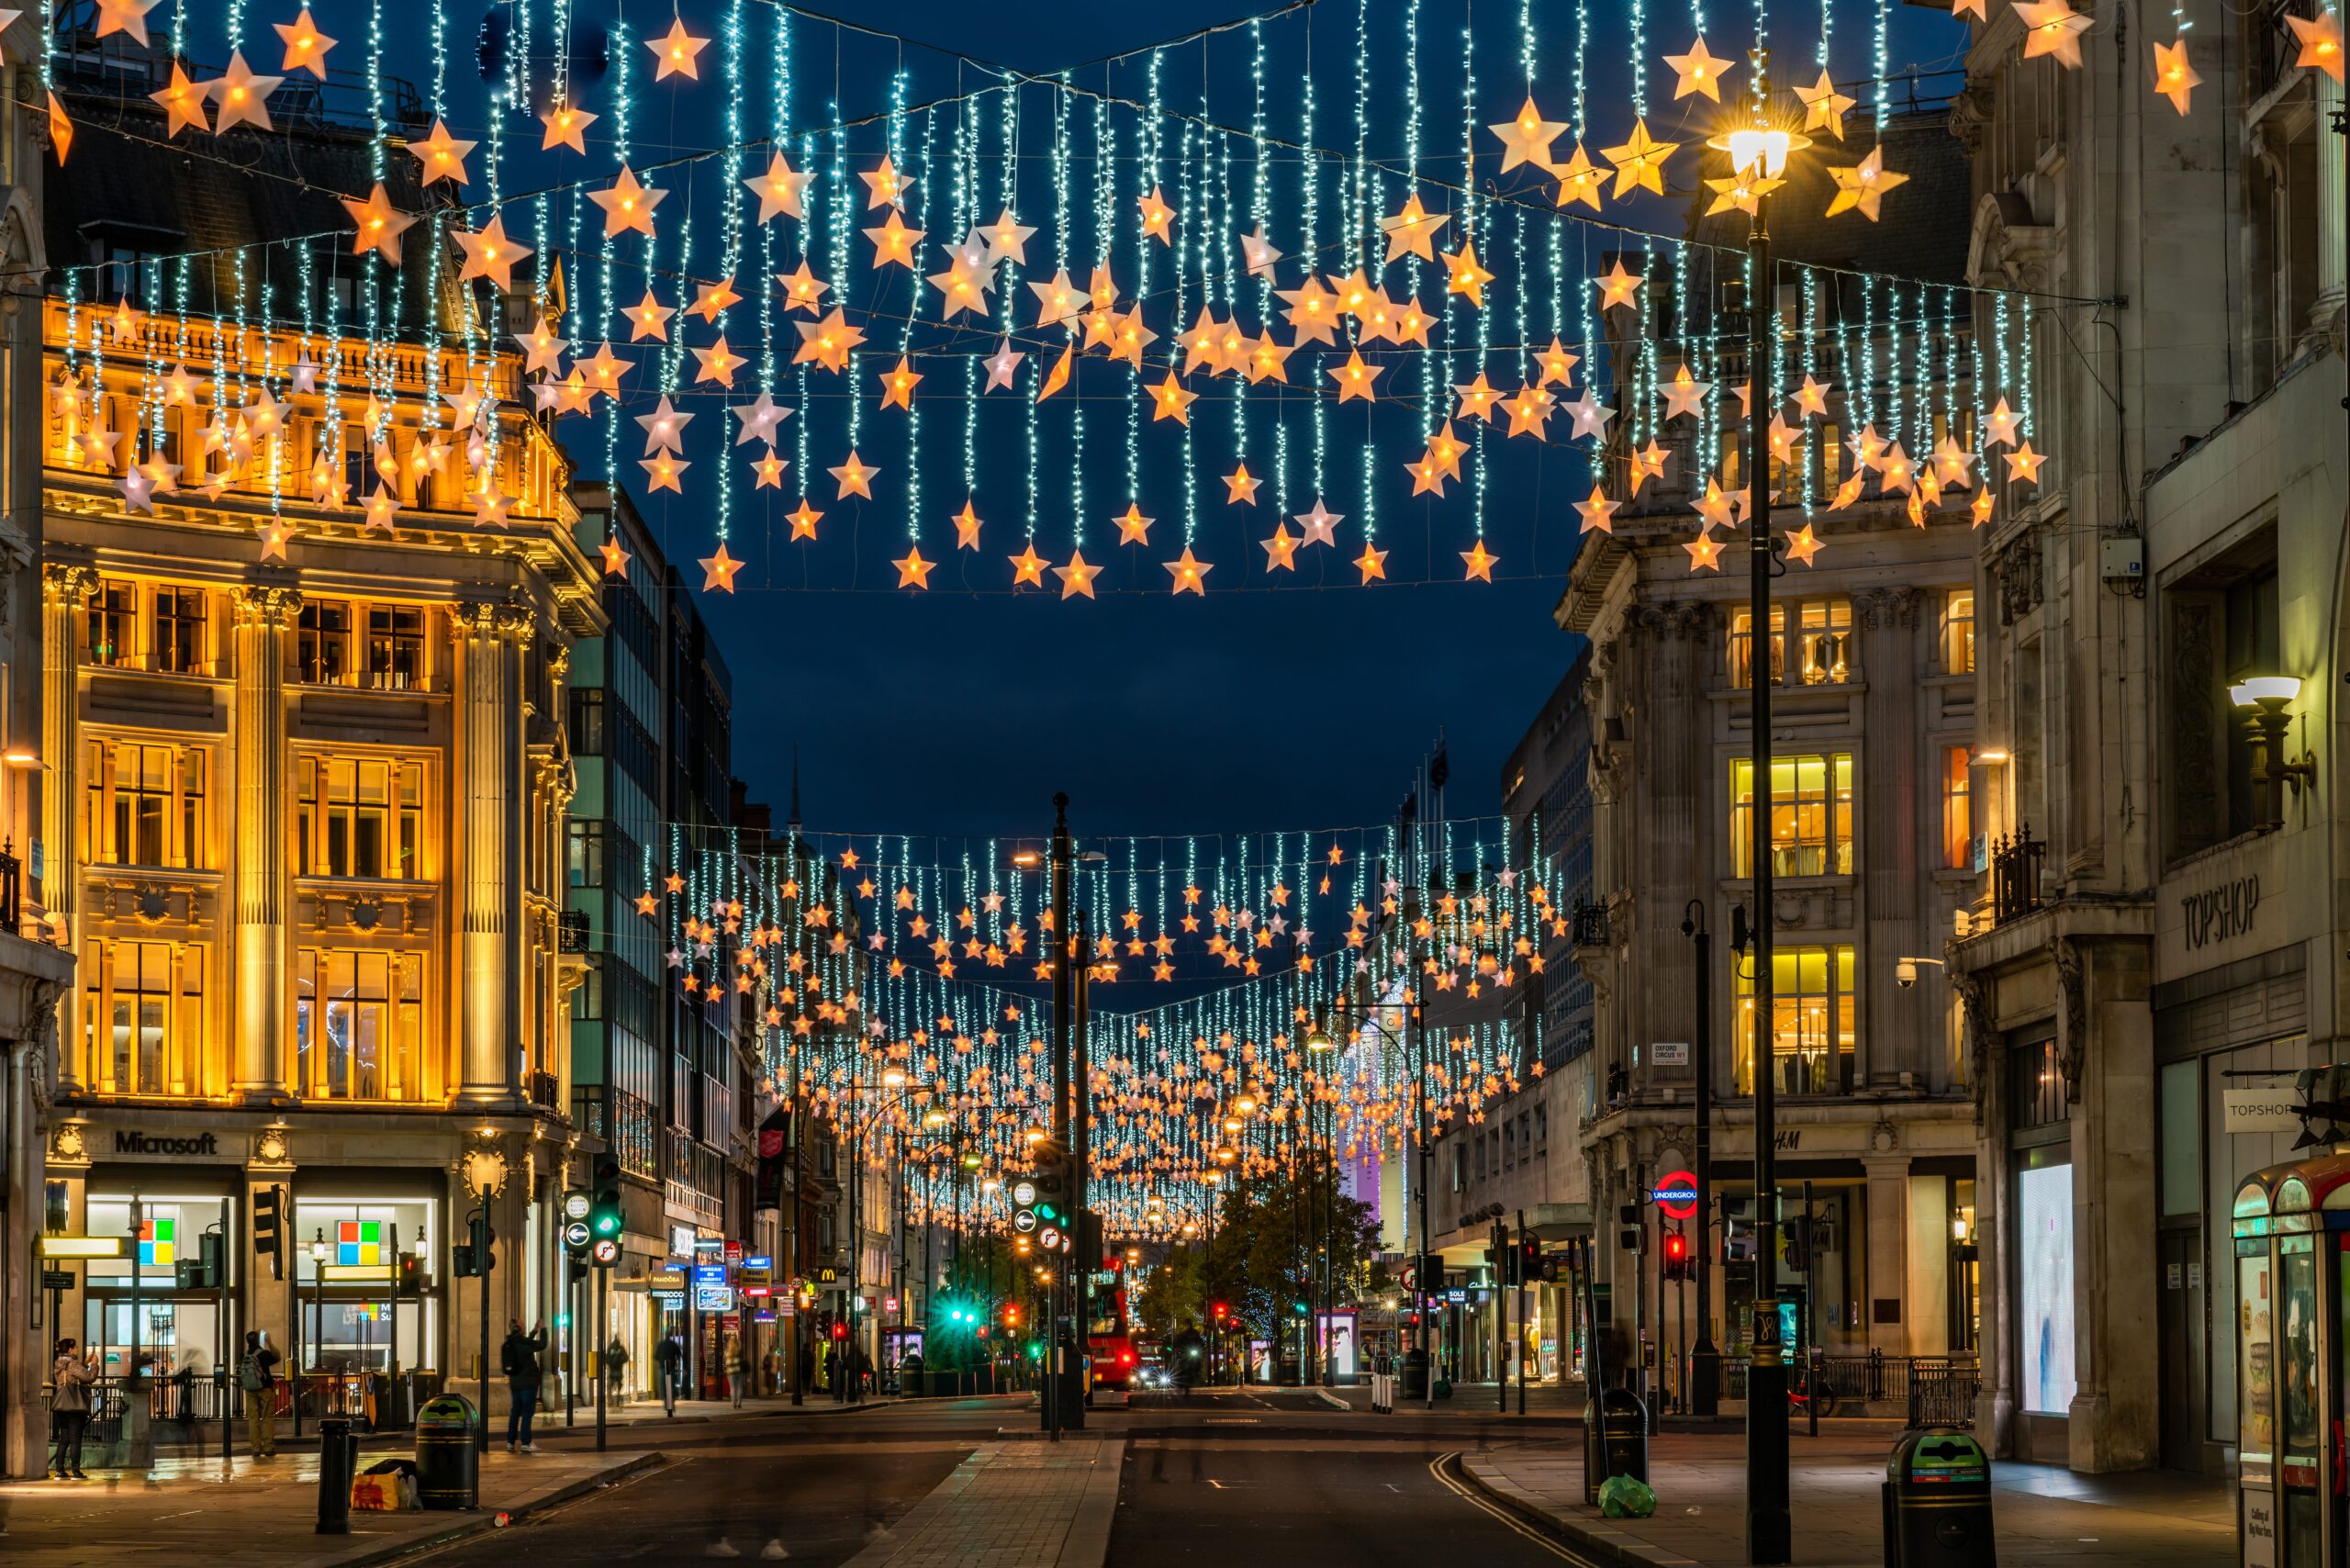 London Oxford Street